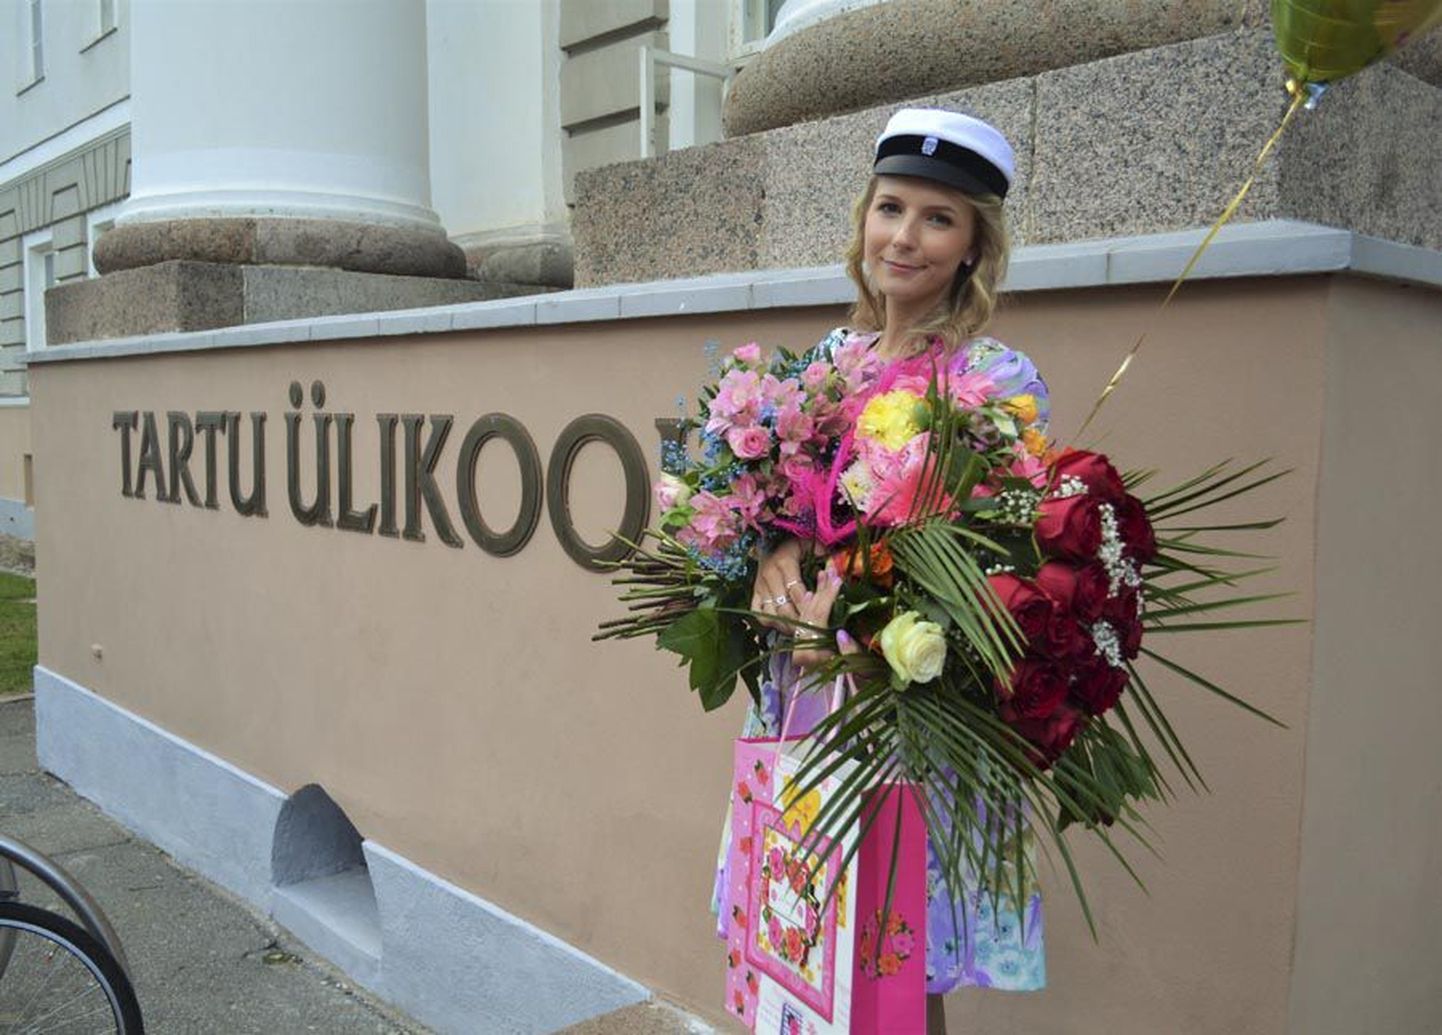 Suure-Jaanist pärit Jessica Vainaru on edukalt lõpetanud bakalaureuseõpingud Tartu ülikoolis.